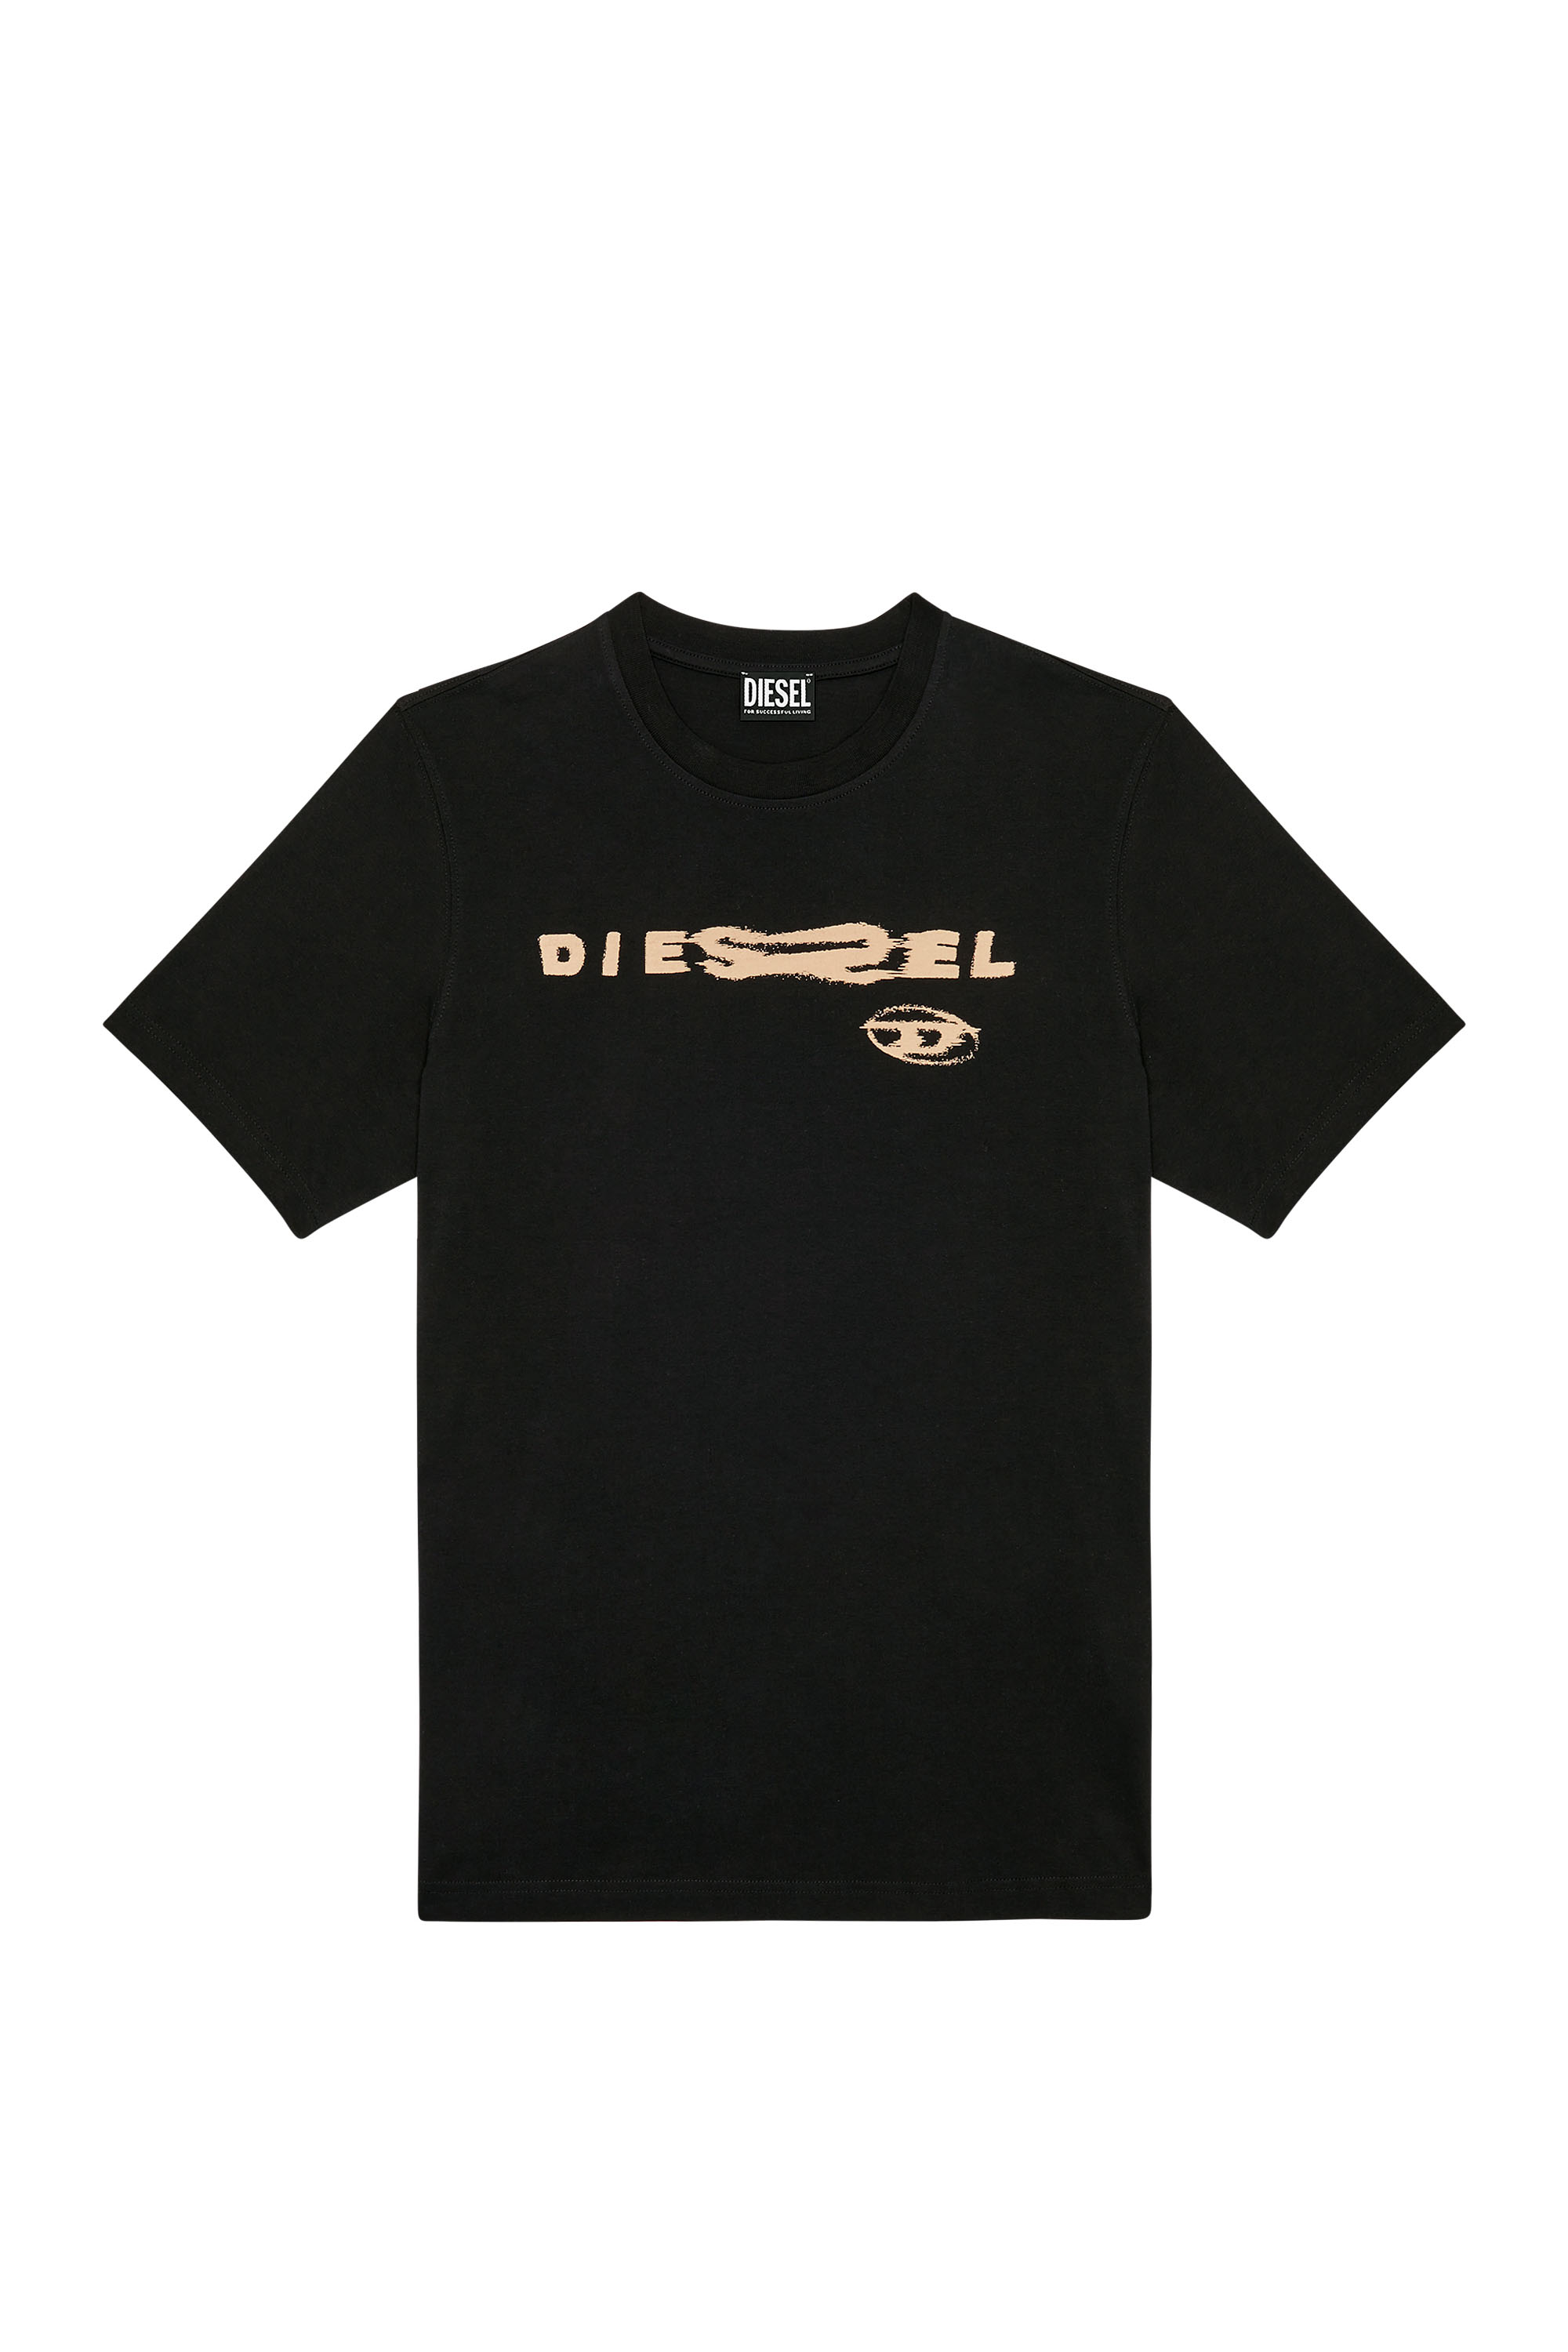 Diesel - T-JUST-G9, Black - Image 3